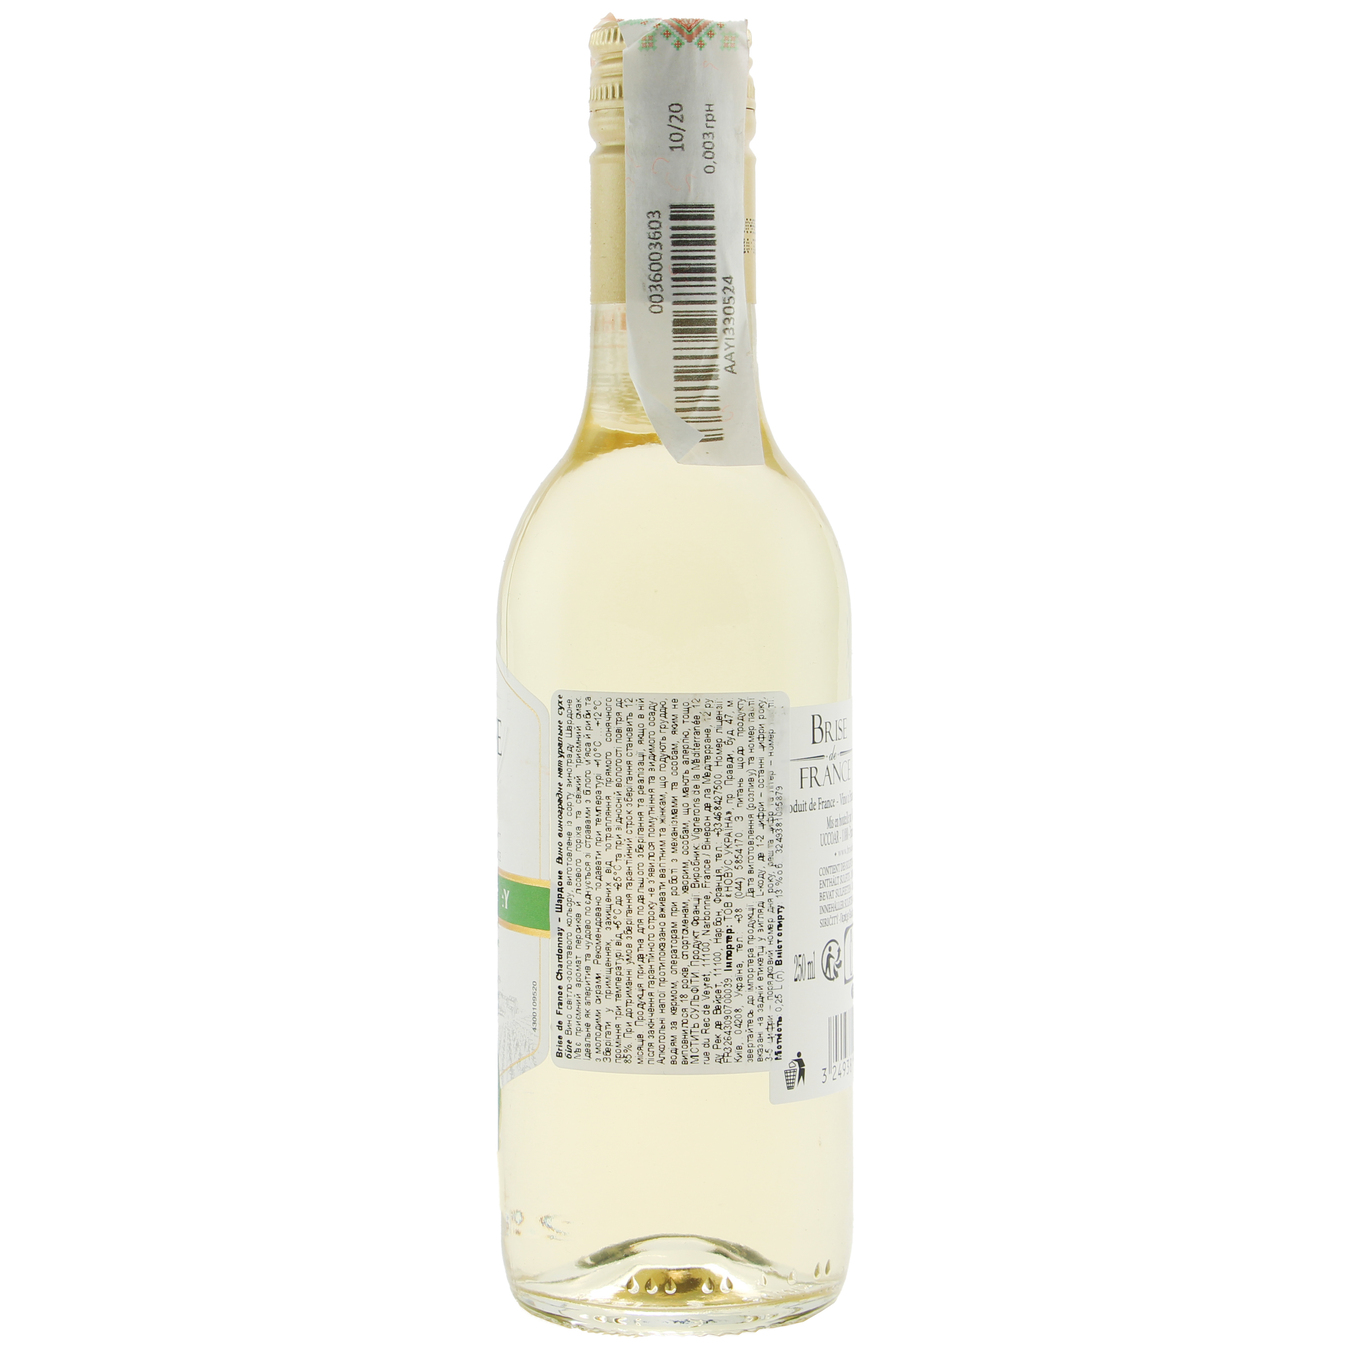 Brise de France Chardonnay white dry wine 12,5% 0,25l 2